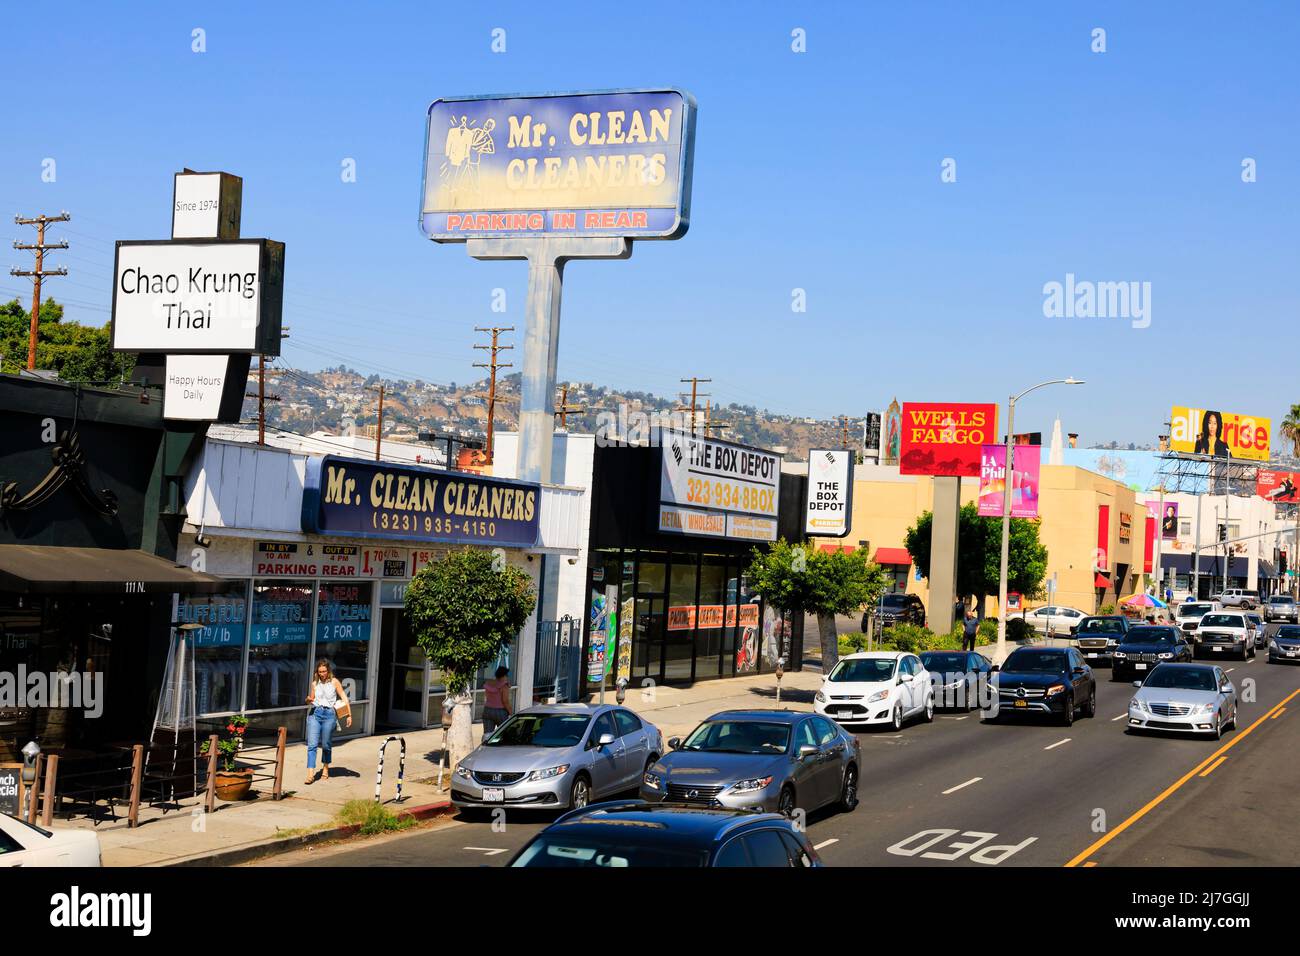 Viel Verkehr und Geschäfte auf der North Fairfax Avenue, Los Angeles, Kalifornien, USA. Chao Krung Thai, Mr Clean Cleaners, The Box Depot und Wells Fargo. Stockfoto